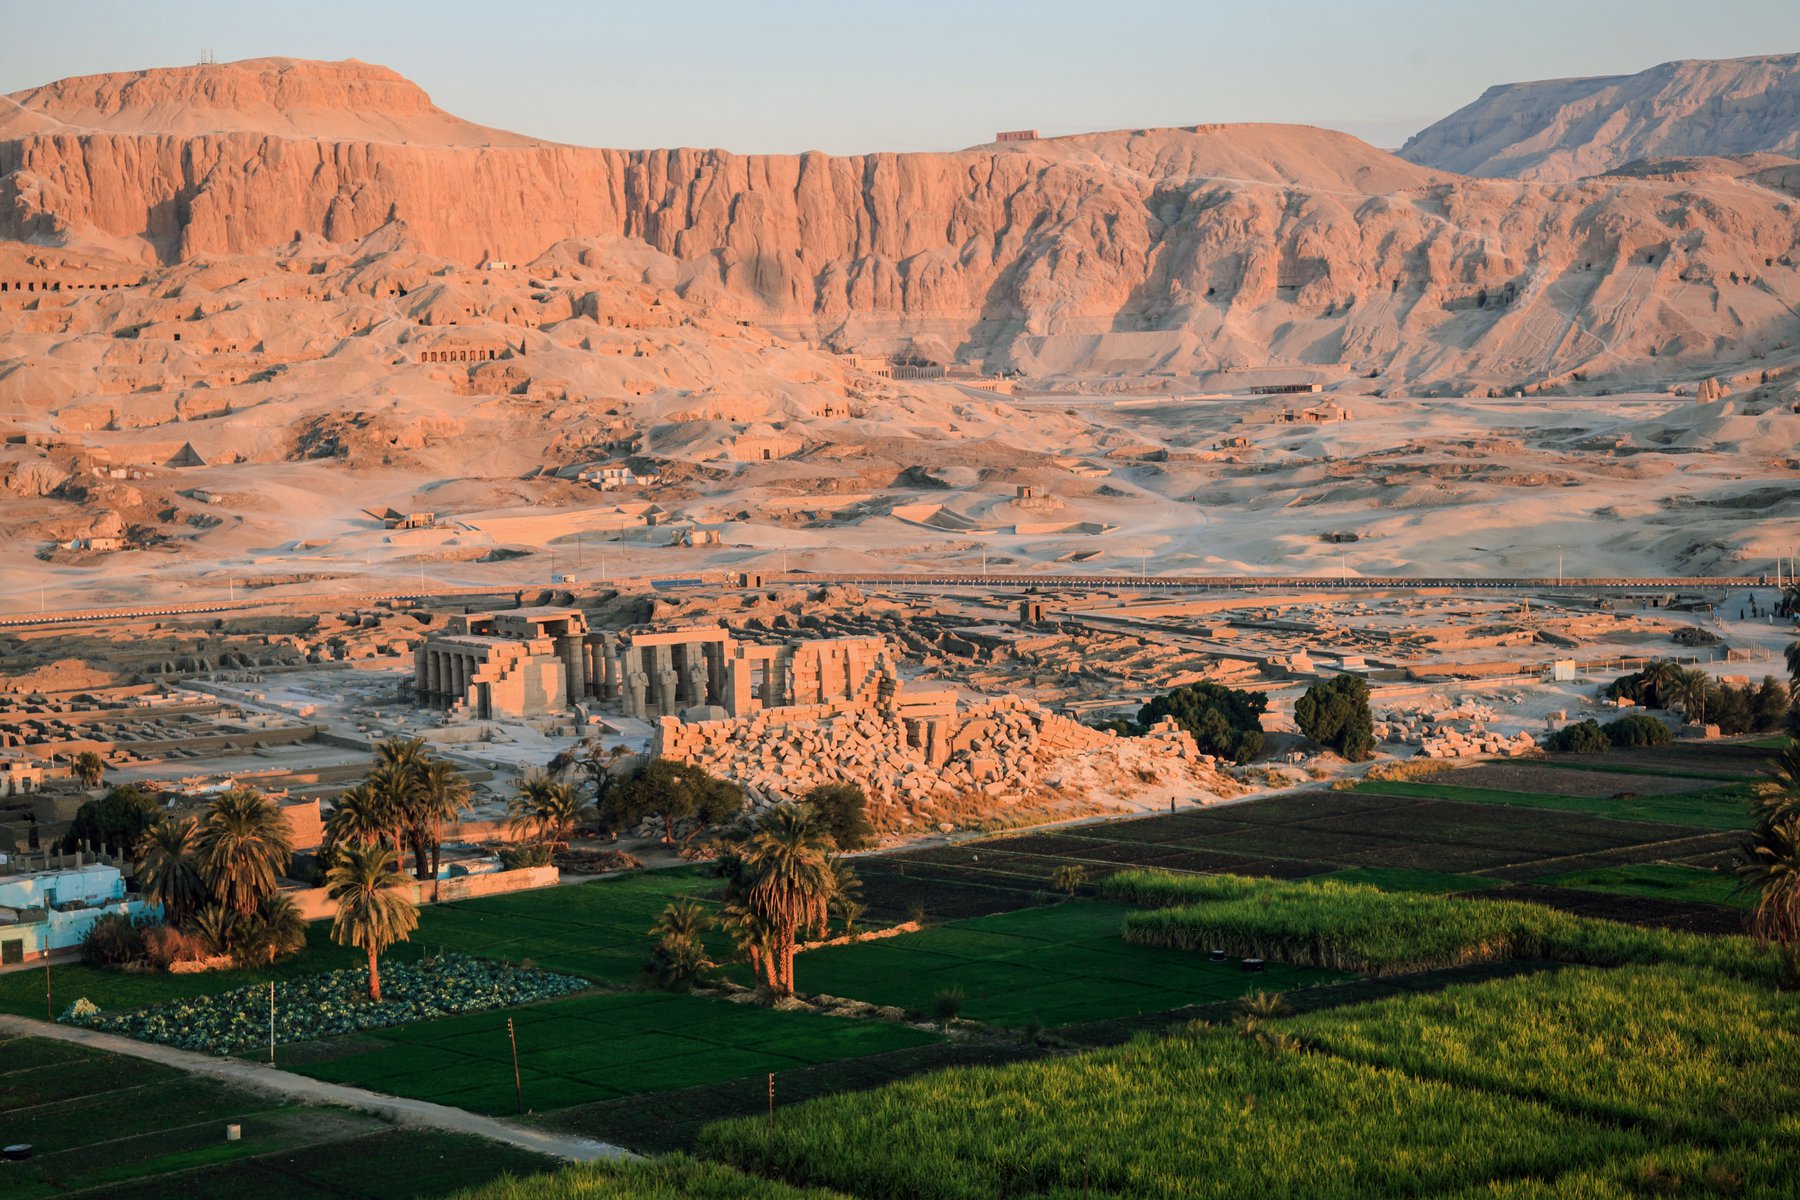 Du utforskar Konungarnas dal vid Luxor